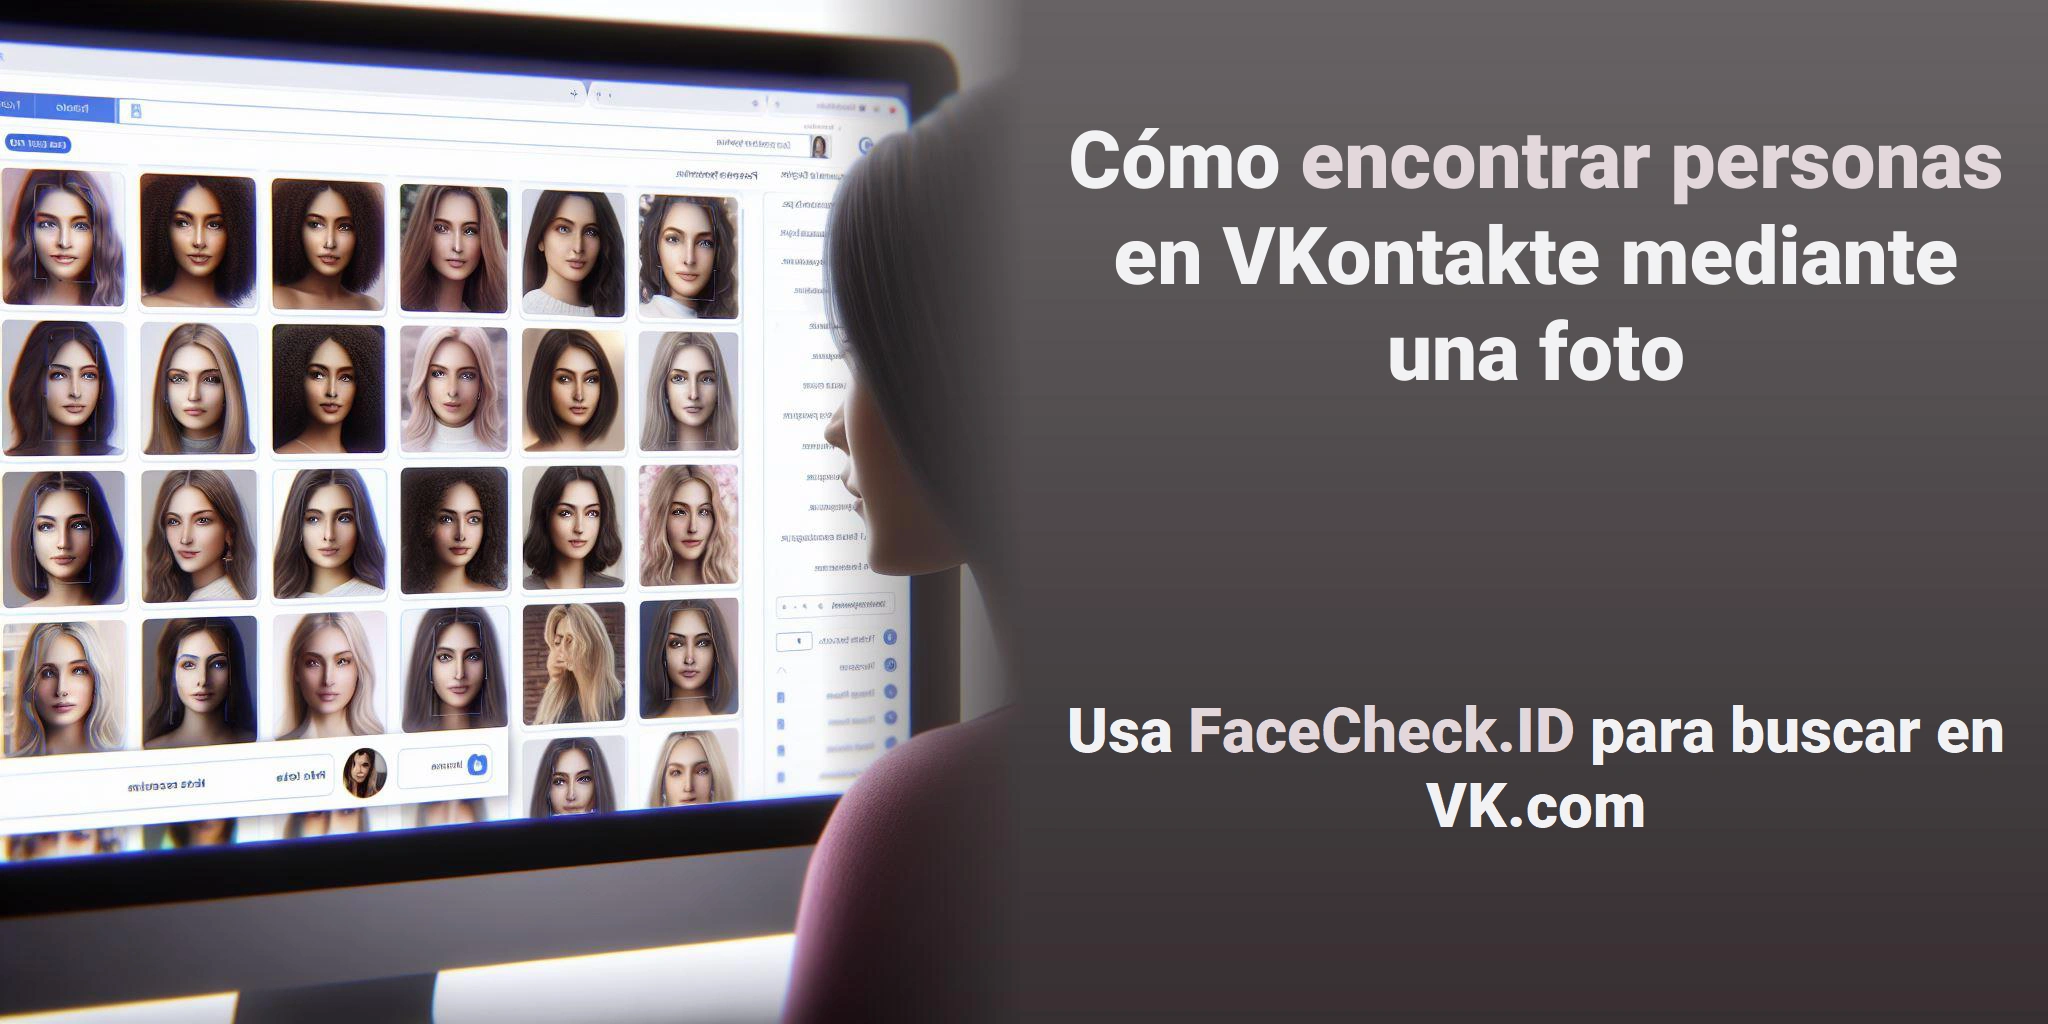 Cómo encontrar personas en VK.com mediante una foto